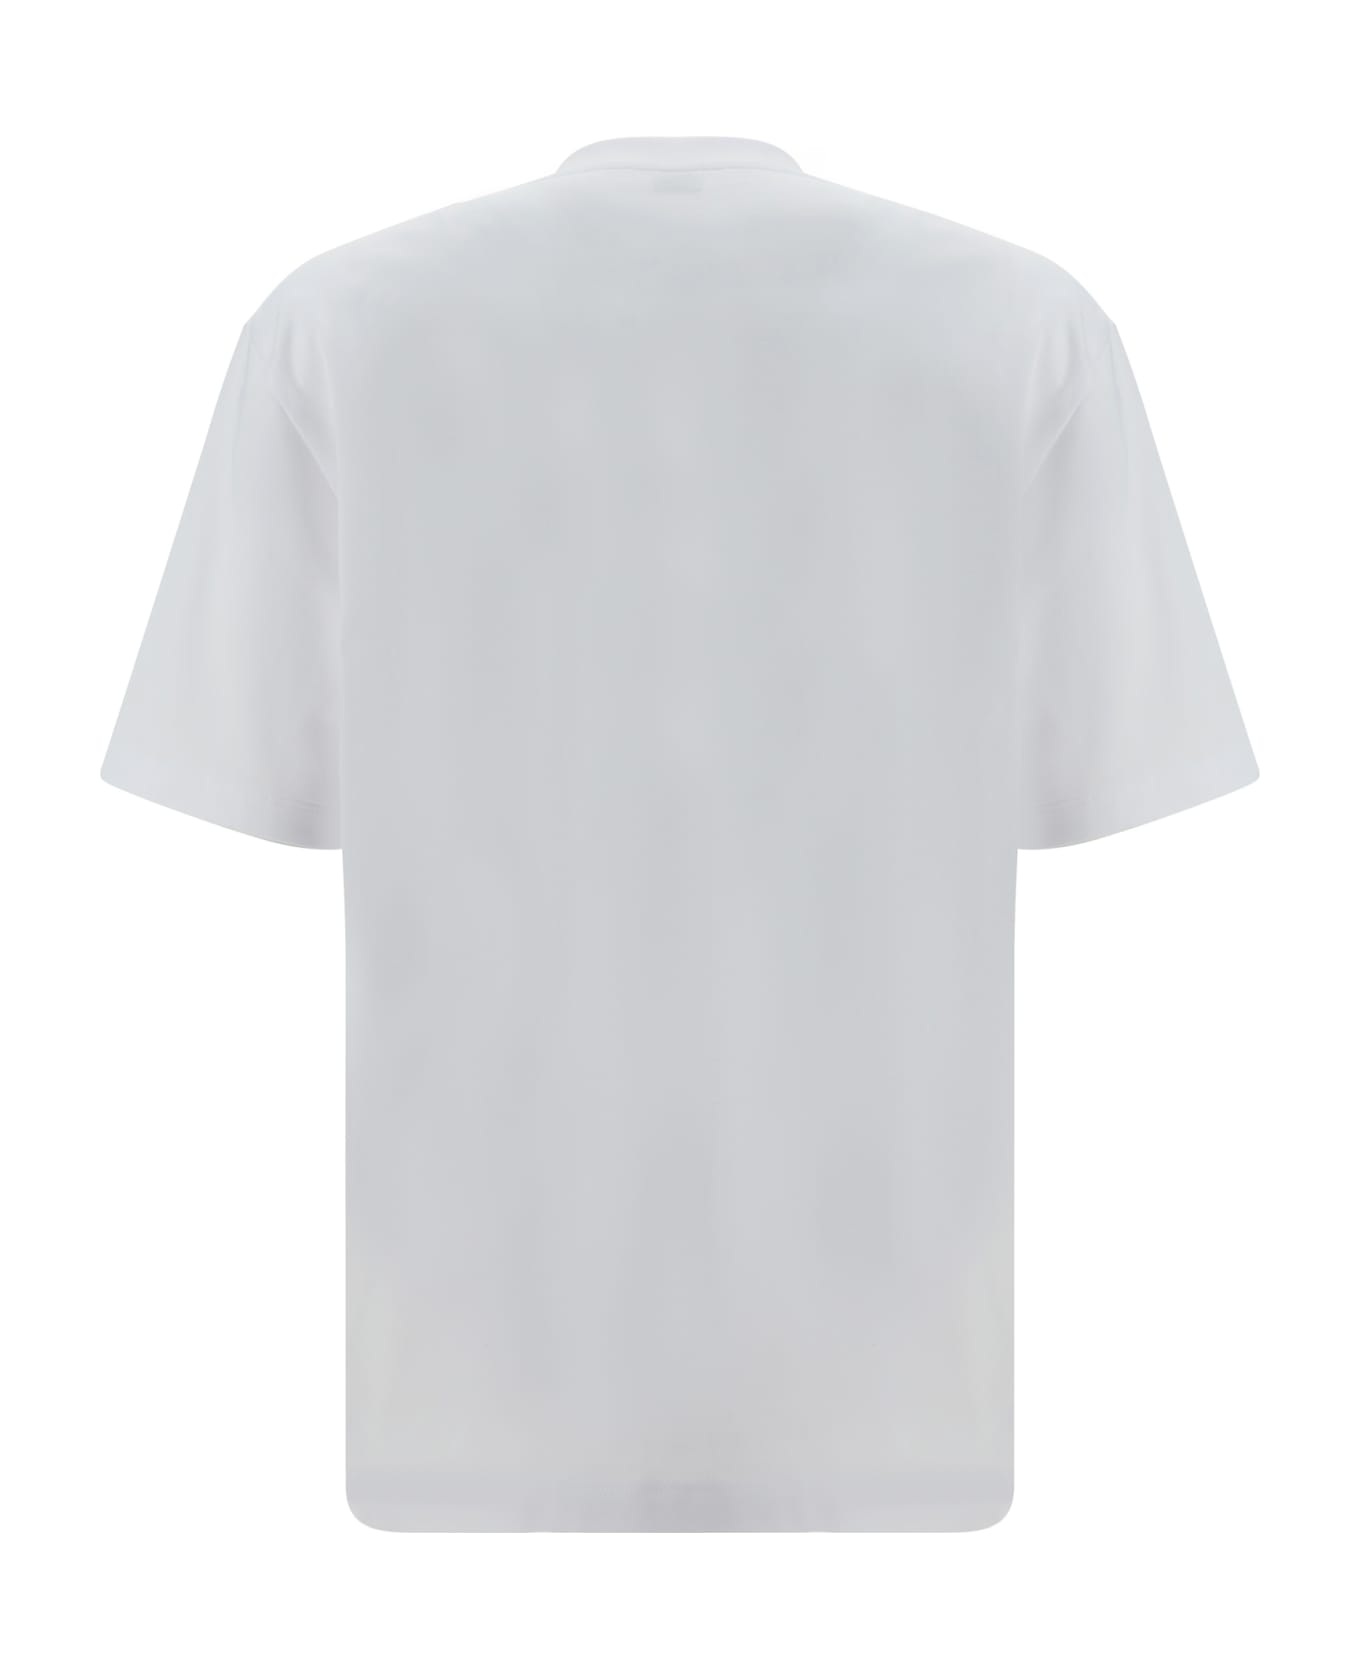 Ferragamo T-shirt - White シャツ